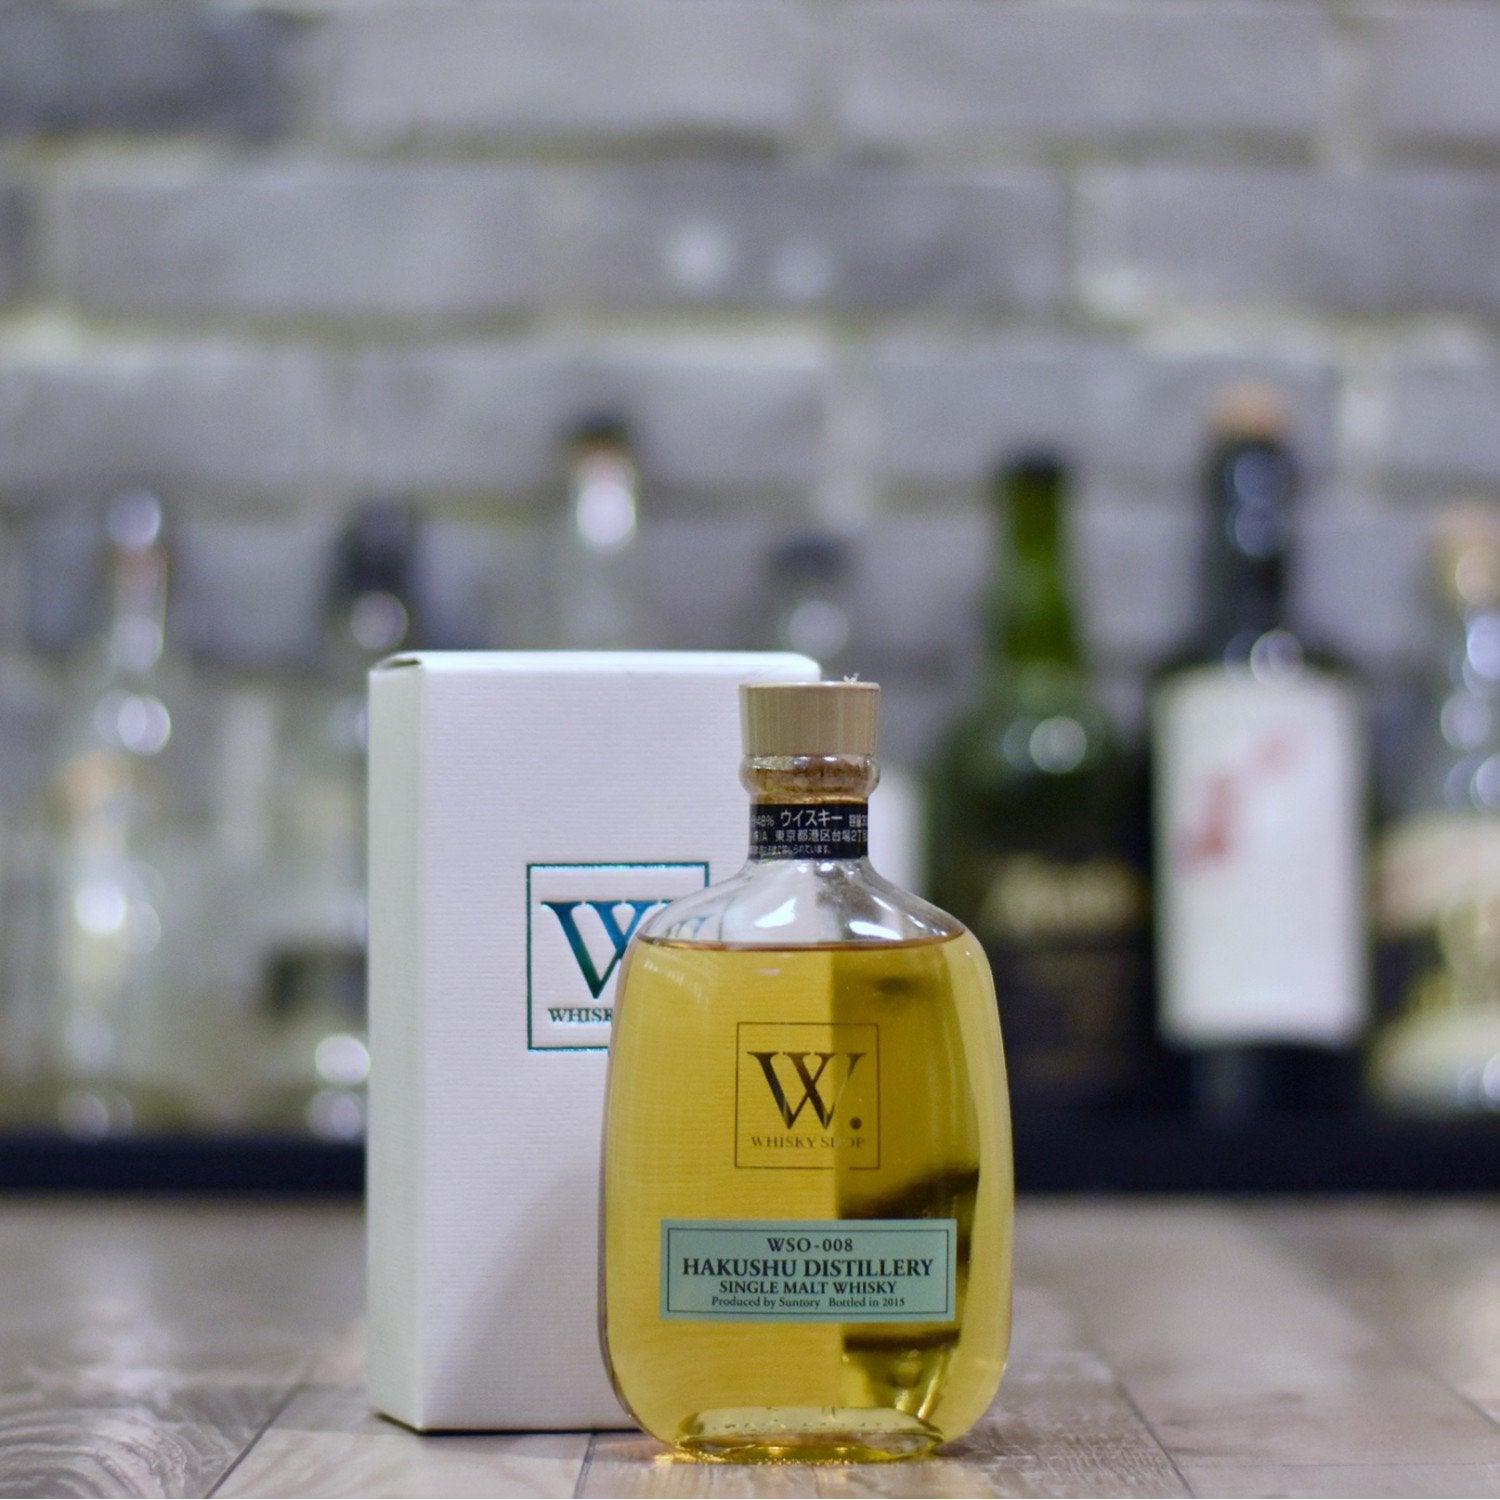 白州 Hakushu 2015 Whisky Shop W. WSO-008 - The Rare Malt